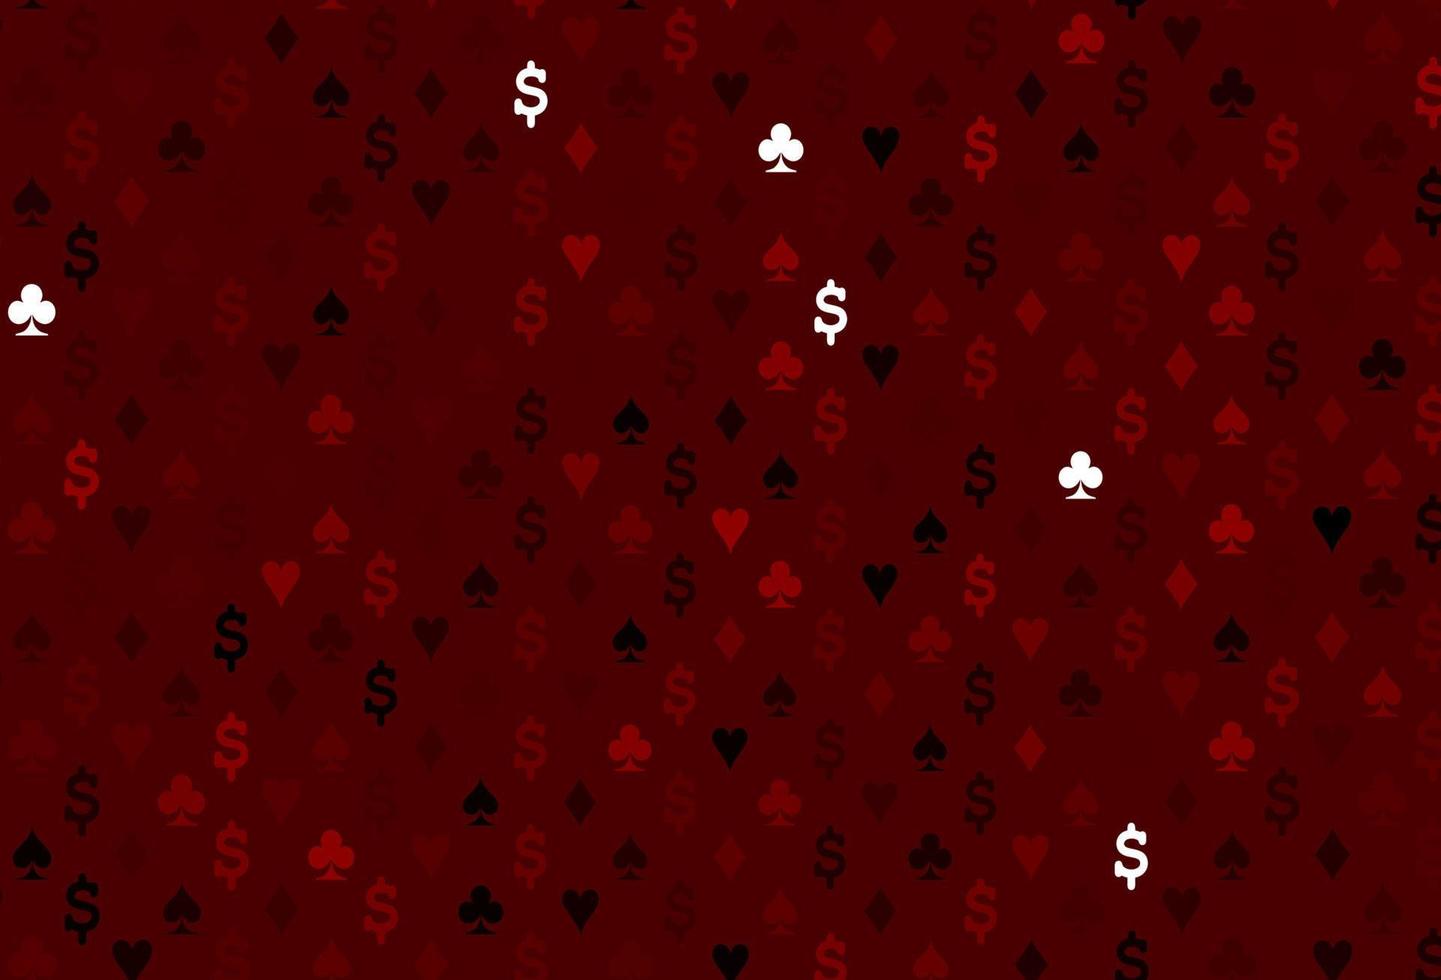 modèle vectoriel rouge foncé avec des symboles de poker.